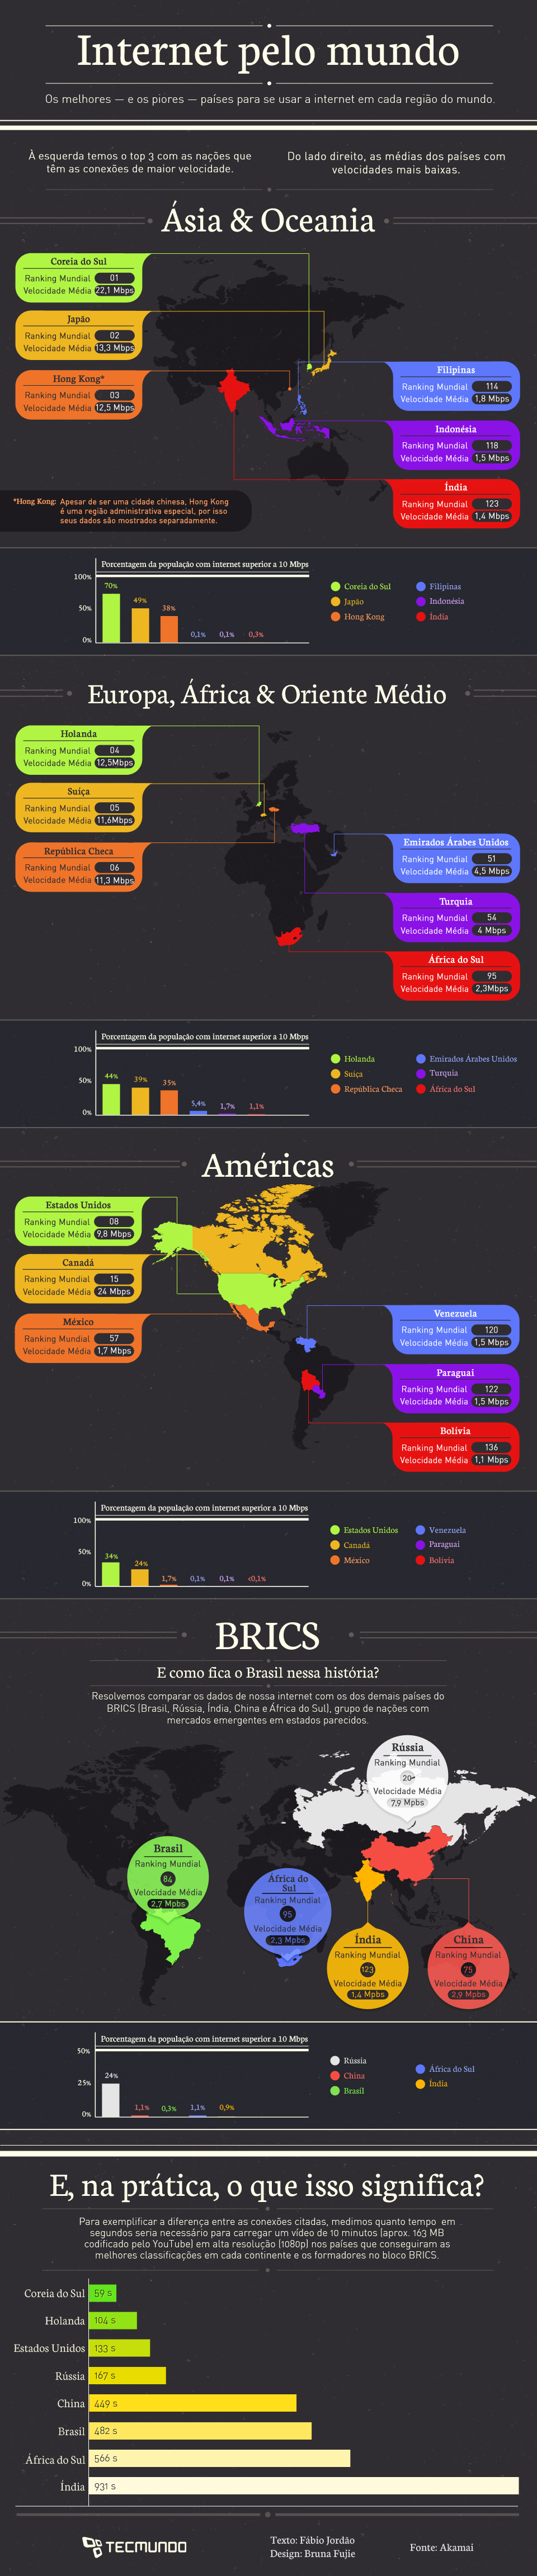 Infográfico - Internet: como estão as velocidades nos principais países [infográfico]